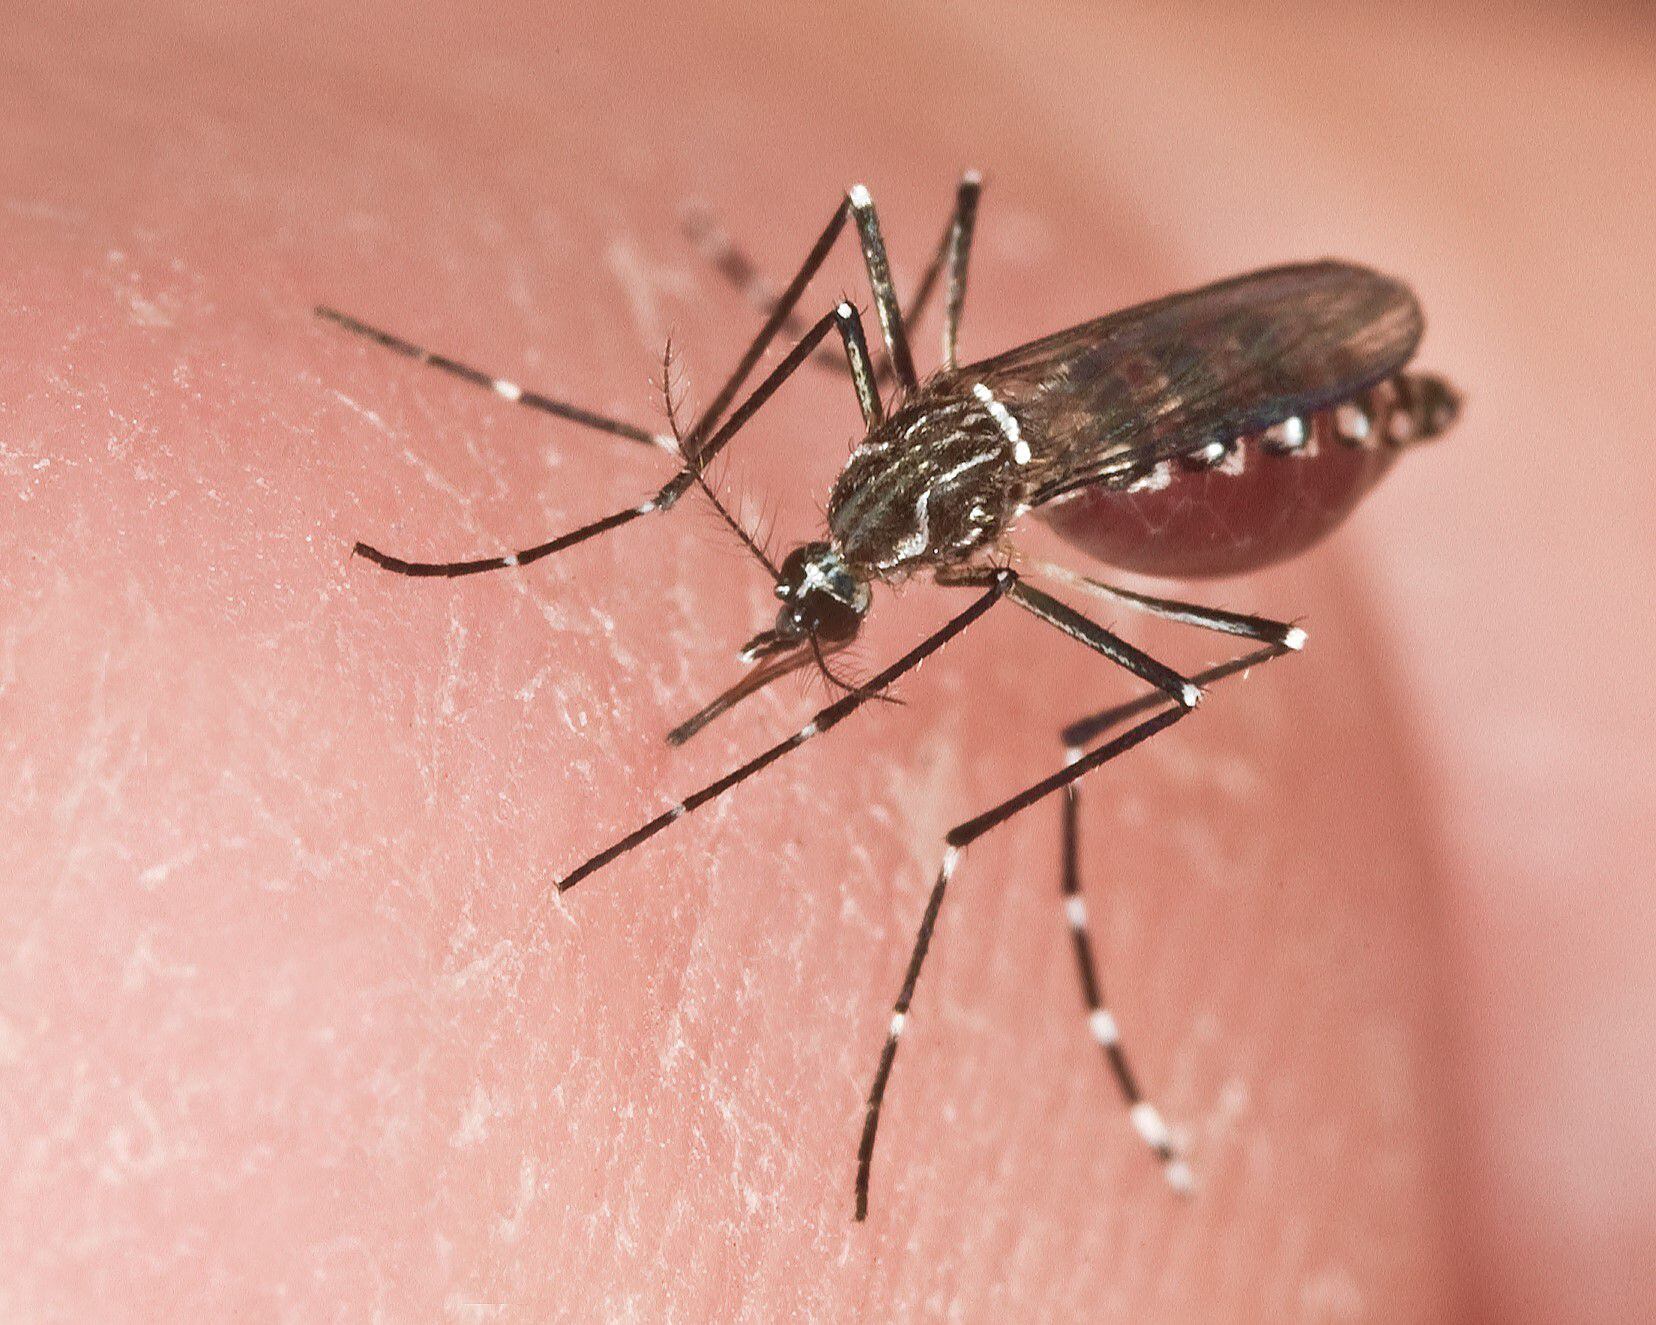 Los chicos adquieren la infección por las picaduras de hembras de mosquitos Aedes aegypti infectadas. EFE/ UF/IFAS